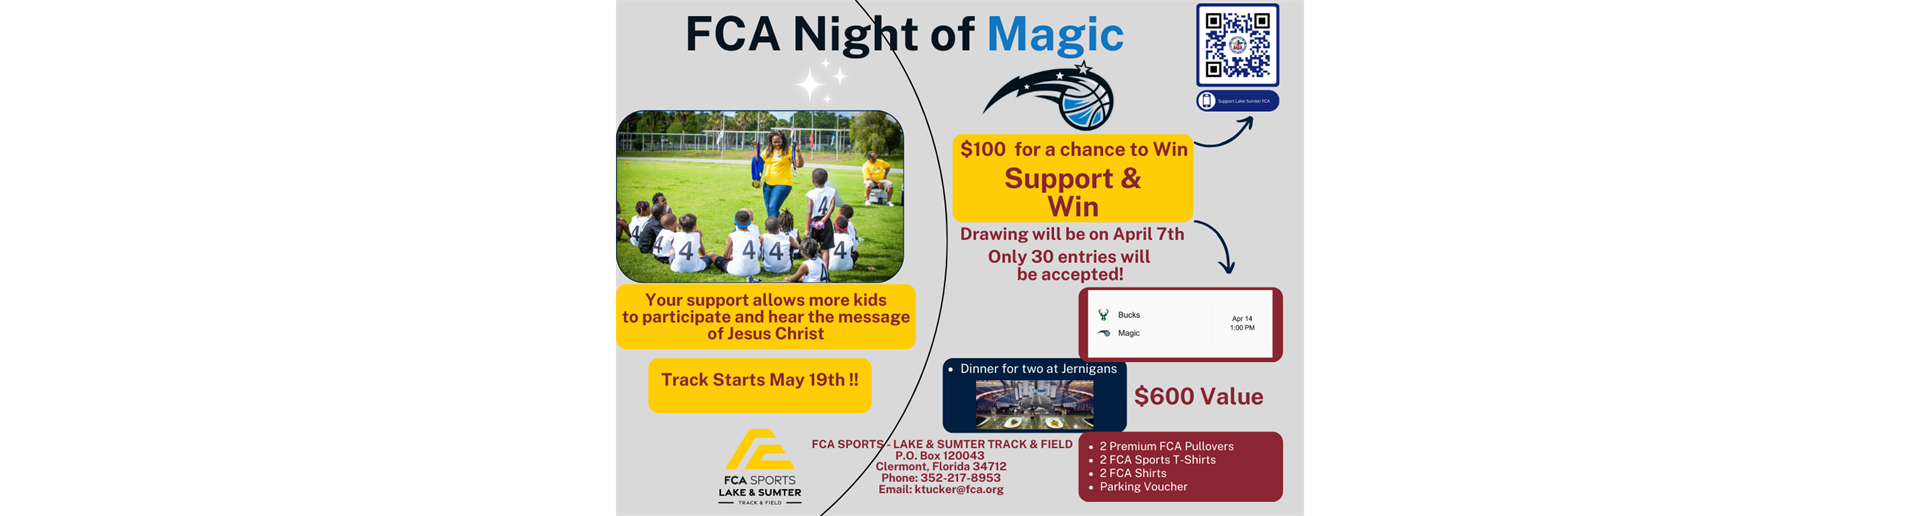 FCA Night of Magic